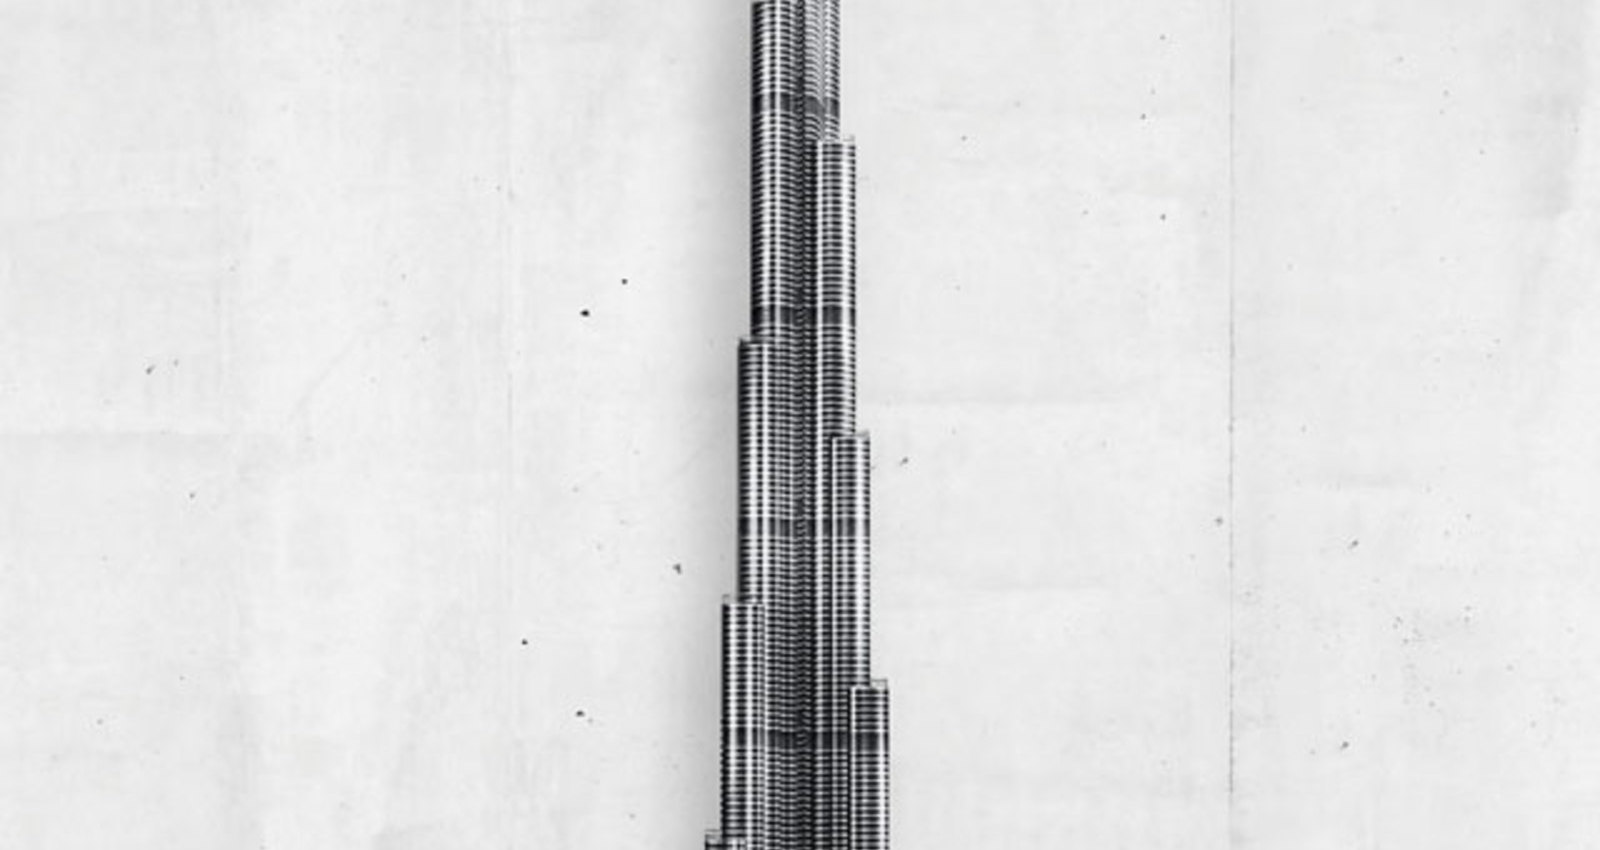 Skyscrapers 2013